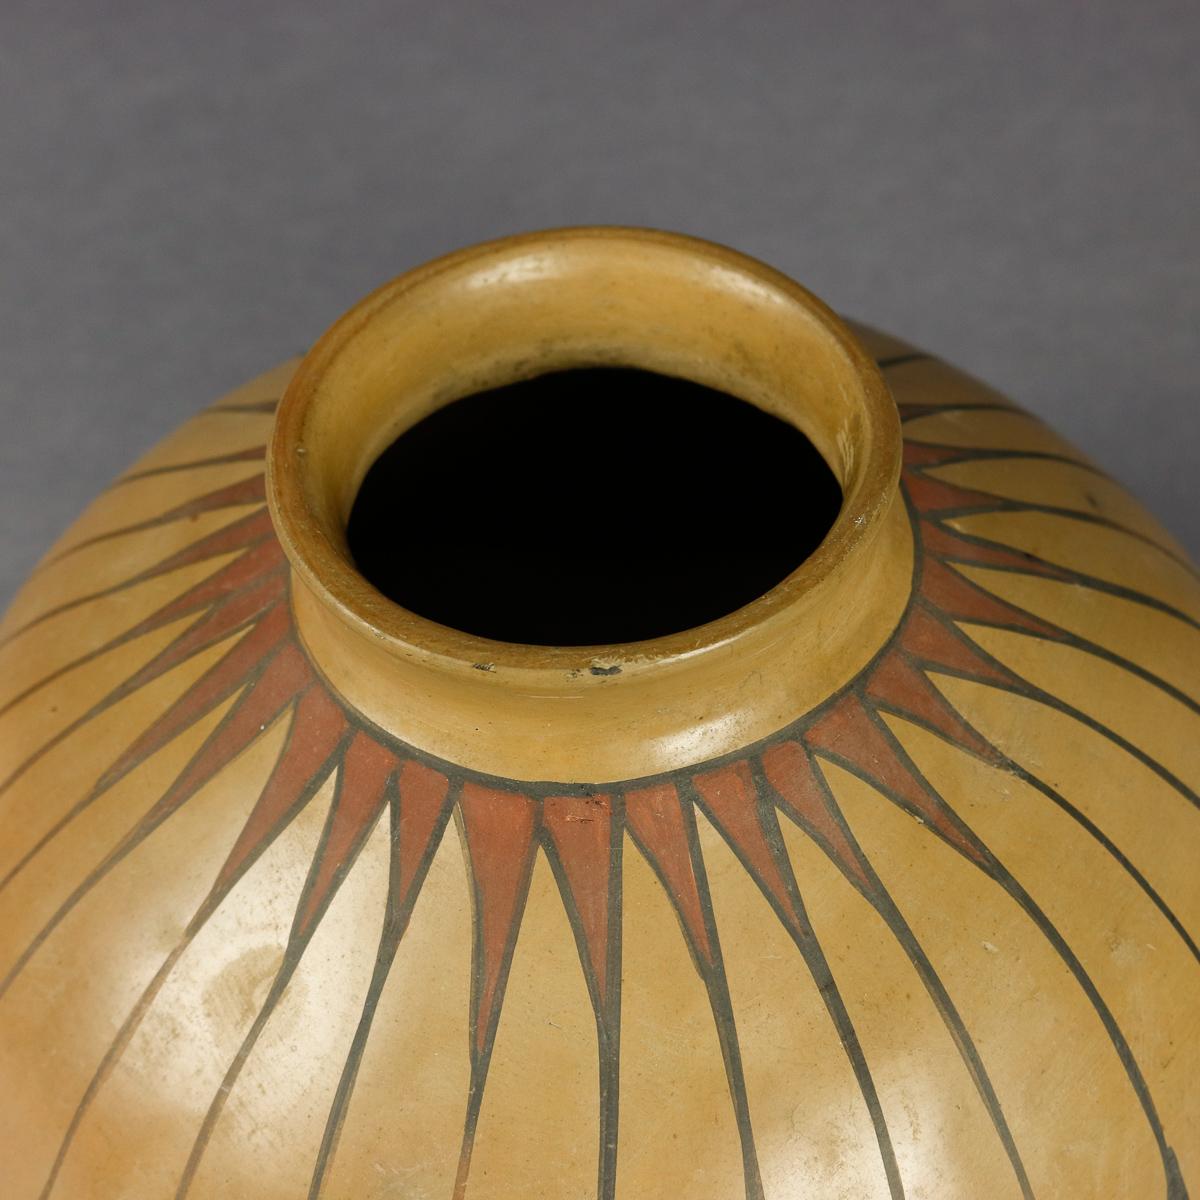 Glazed Southwest Native American Indian Acoma Stylized Feather Pottery Vase, circa 1900